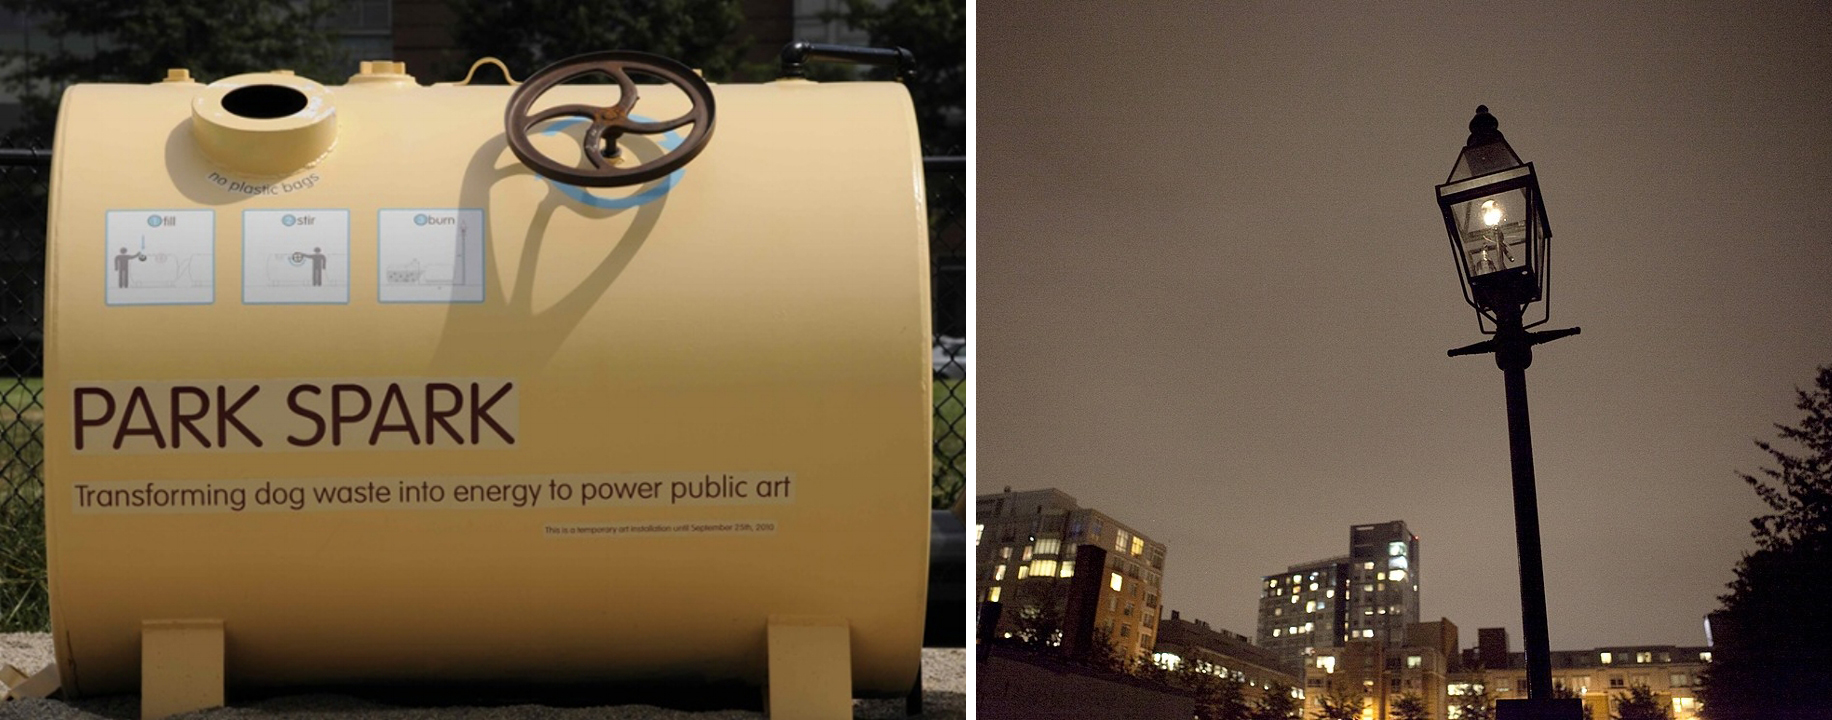 <파크 스파크> | 사진 출처 : www.matthewmazzotta.com, PARK SPARK, Transforming dog waste into energy to power public art